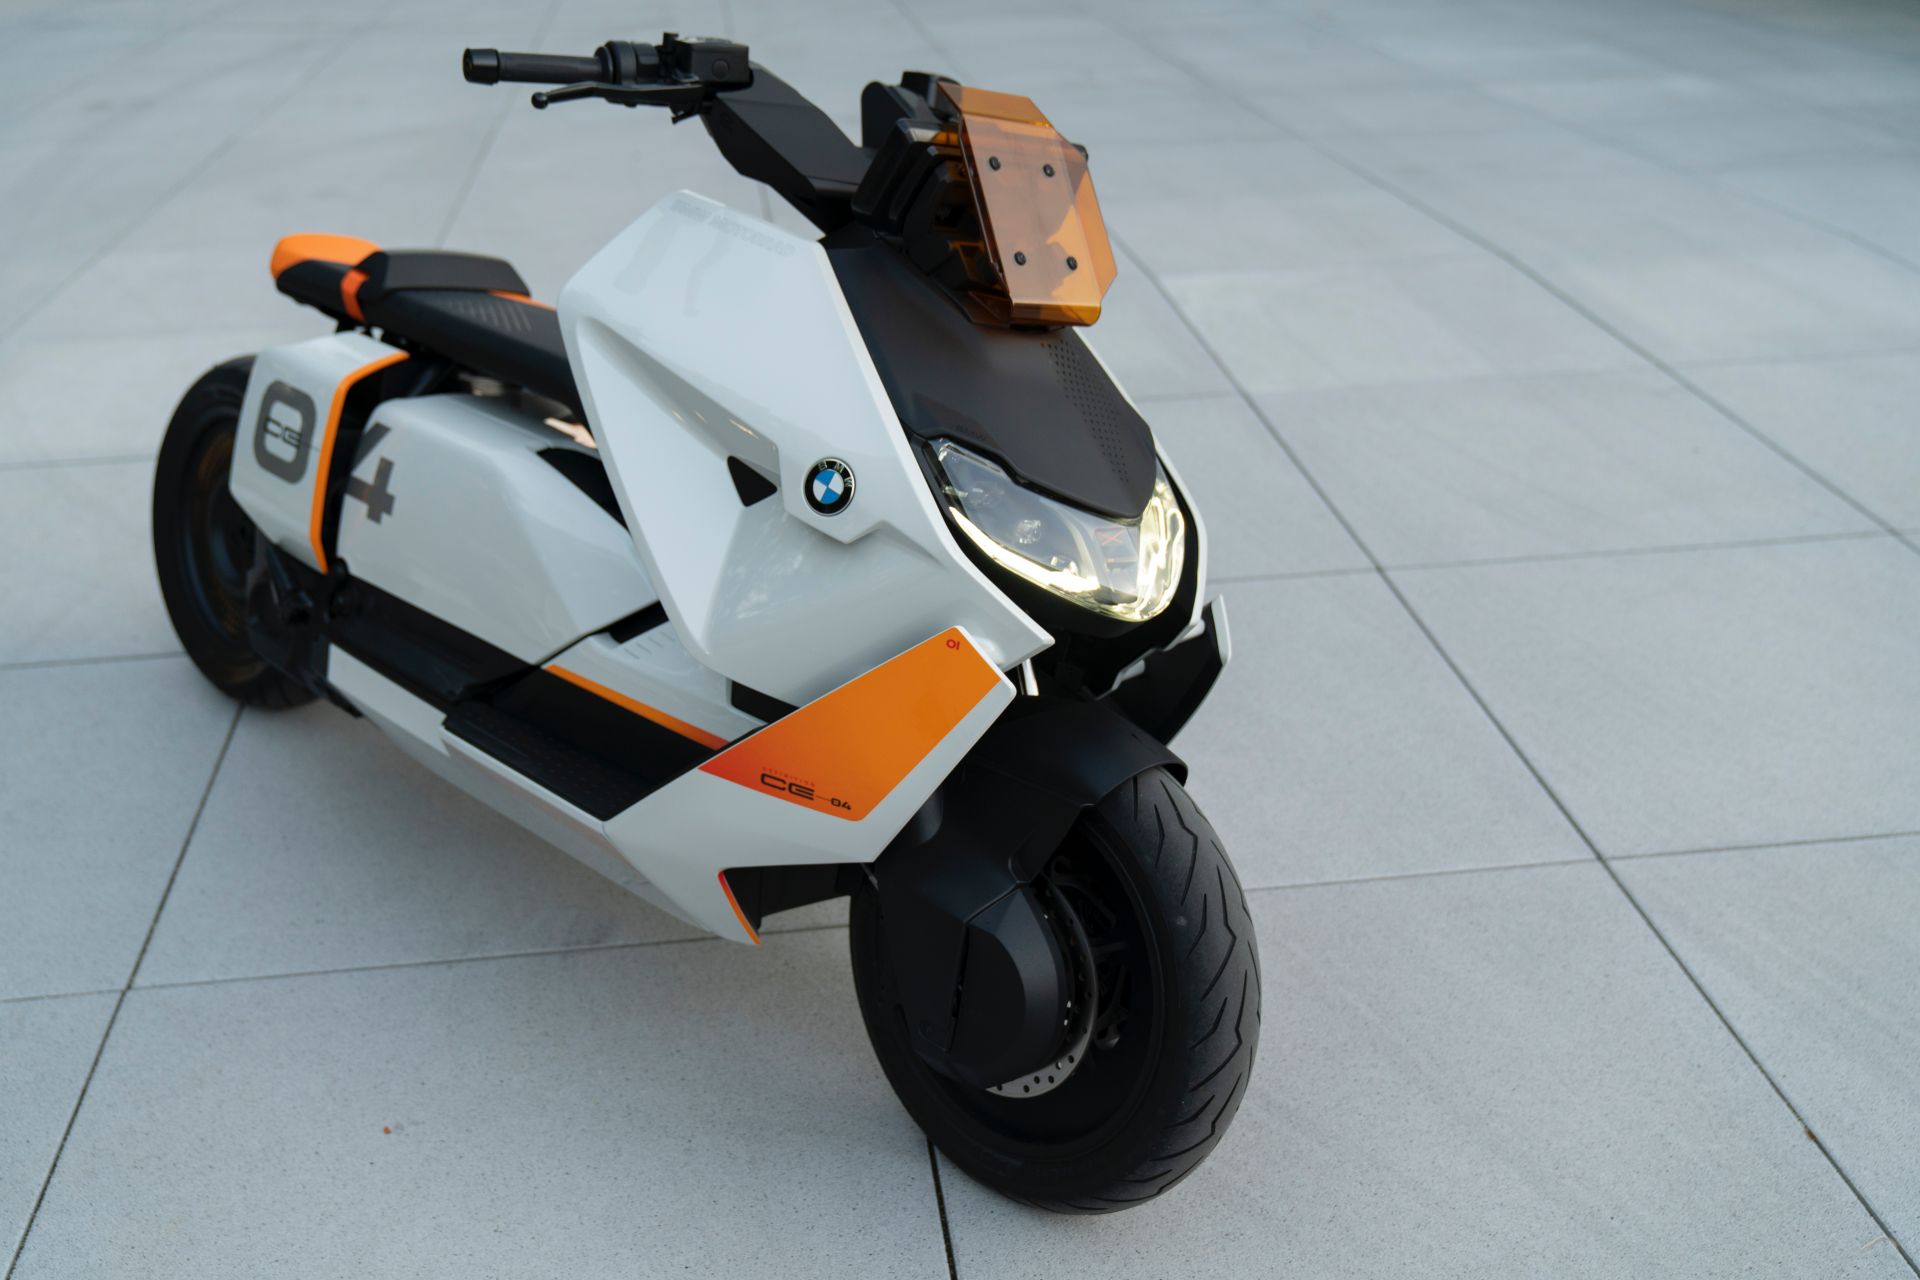 BMW tham chiến phân khúc xe máy điện: Nhìn như phân khối lớn nhưng chỉ chạy được 12km/ngày